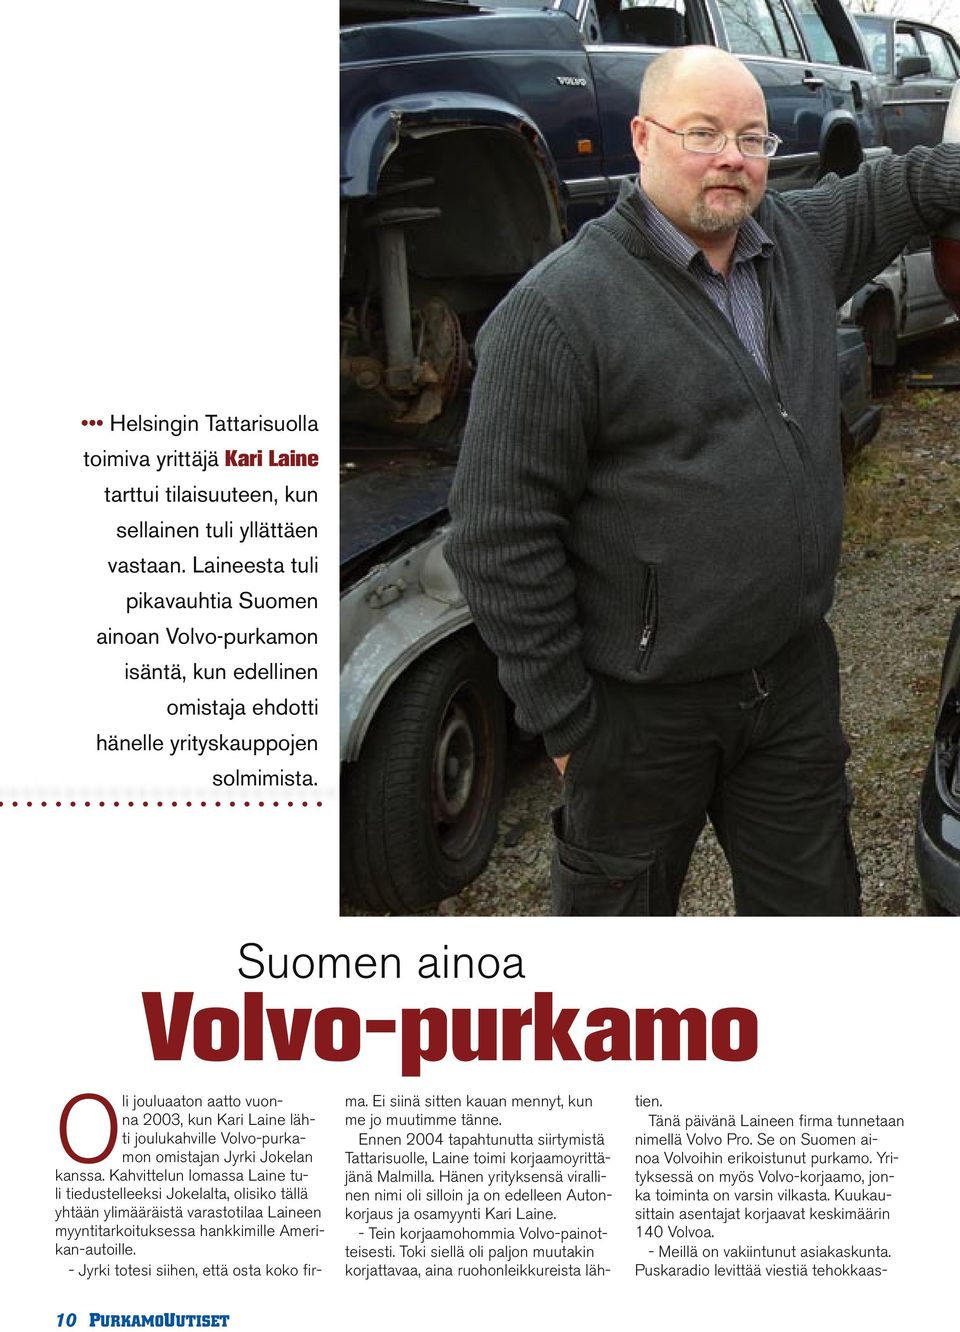 Suomen ainoa Volvo-purkamo Oli jouluaaton aatto vuonna 2003, kun Kari Laine lähti joulukahville Volvo-purkamon omistajan Jyrki Jokelan kanssa.